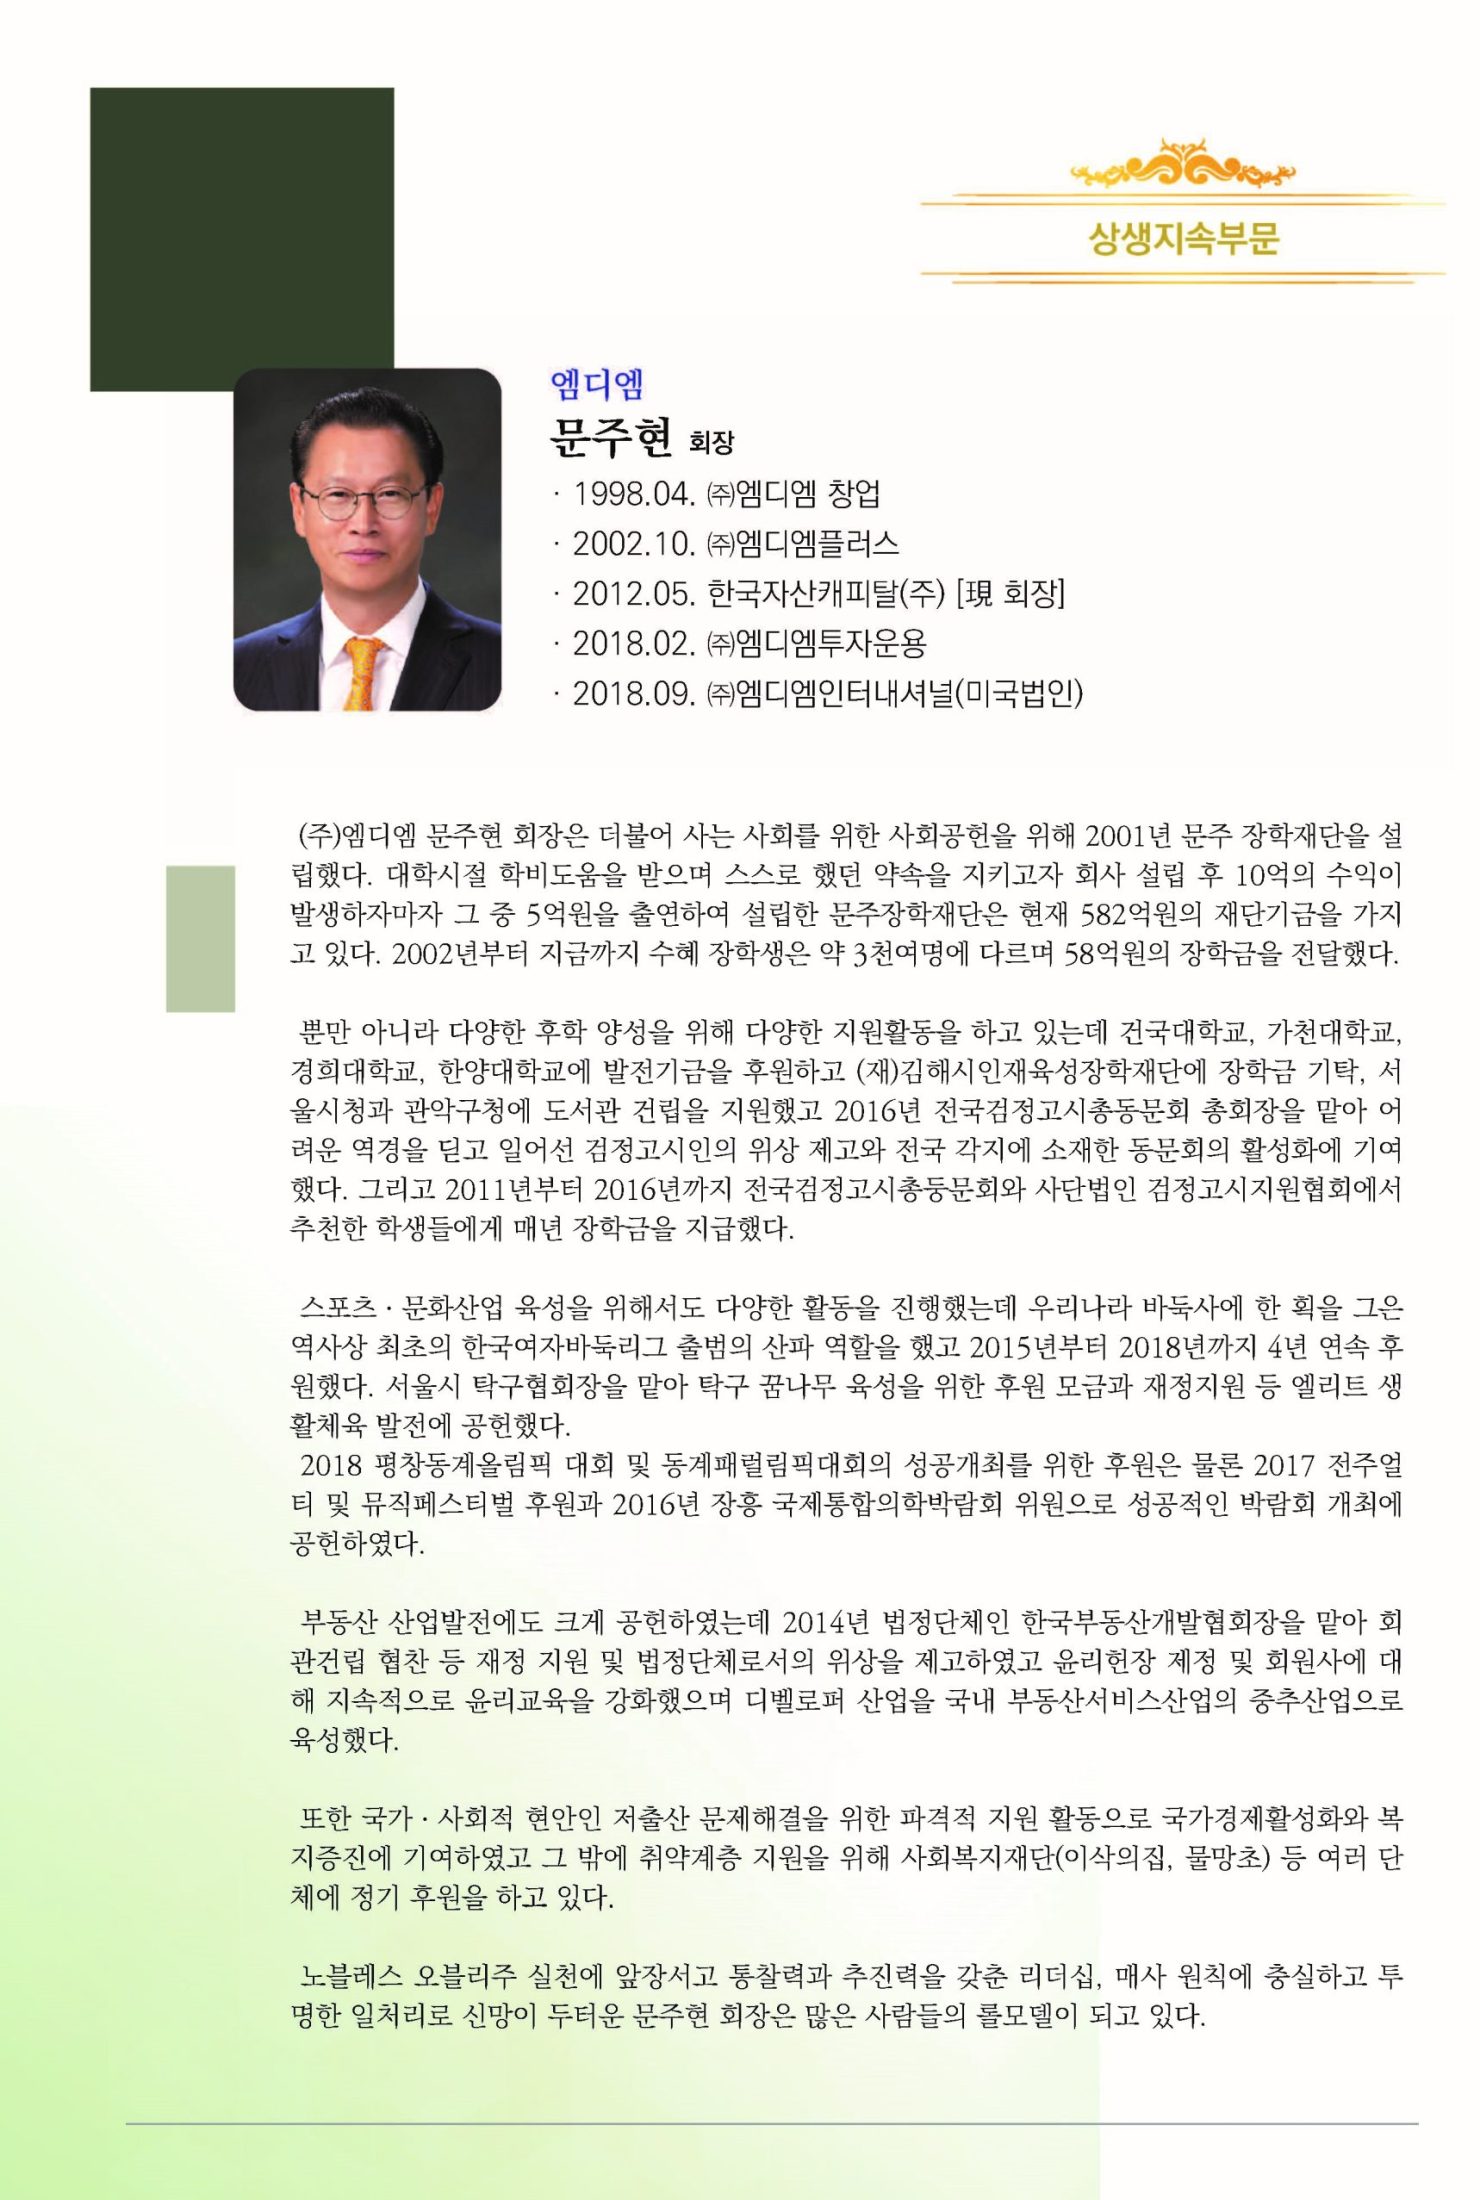 6회 HDI 인간경영대상 시상식(책자)_20201014(2)_페이지_08